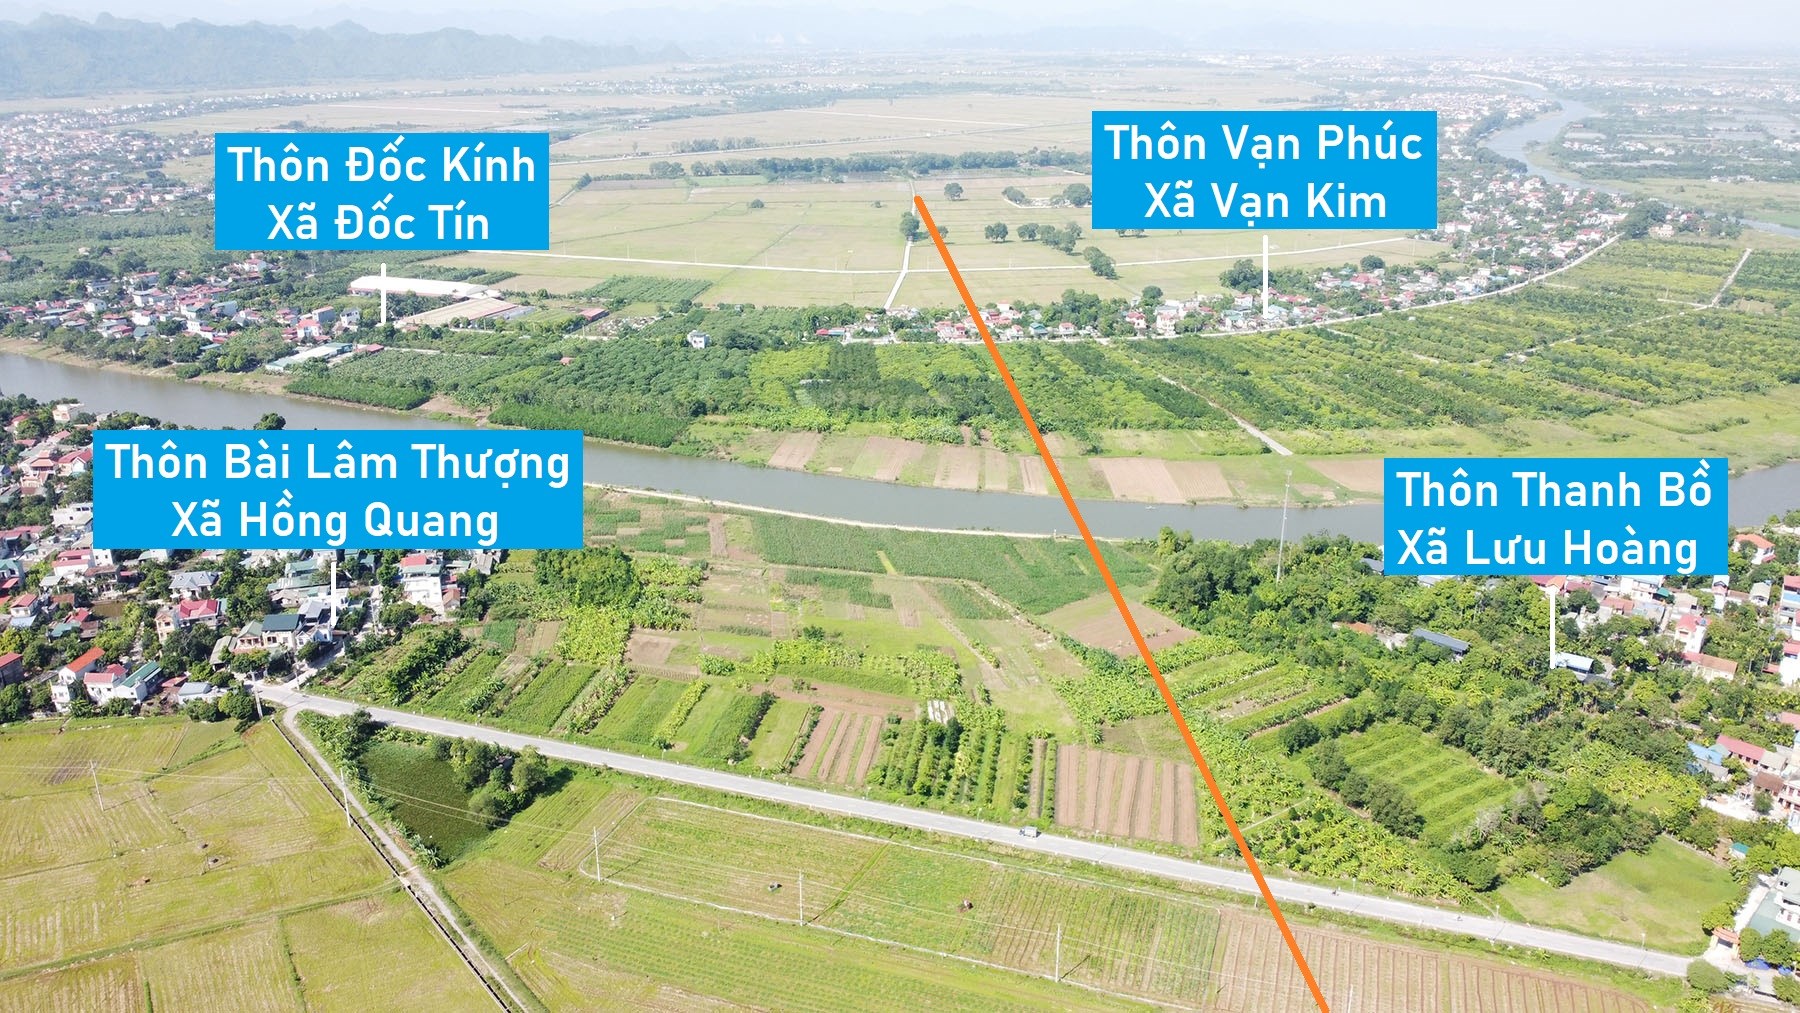 Toàn cảnh vị trí quy hoạch cầu vượt sông Đáy nối huyện Ứng Hòa - Mỹ Đức, Hà Nội